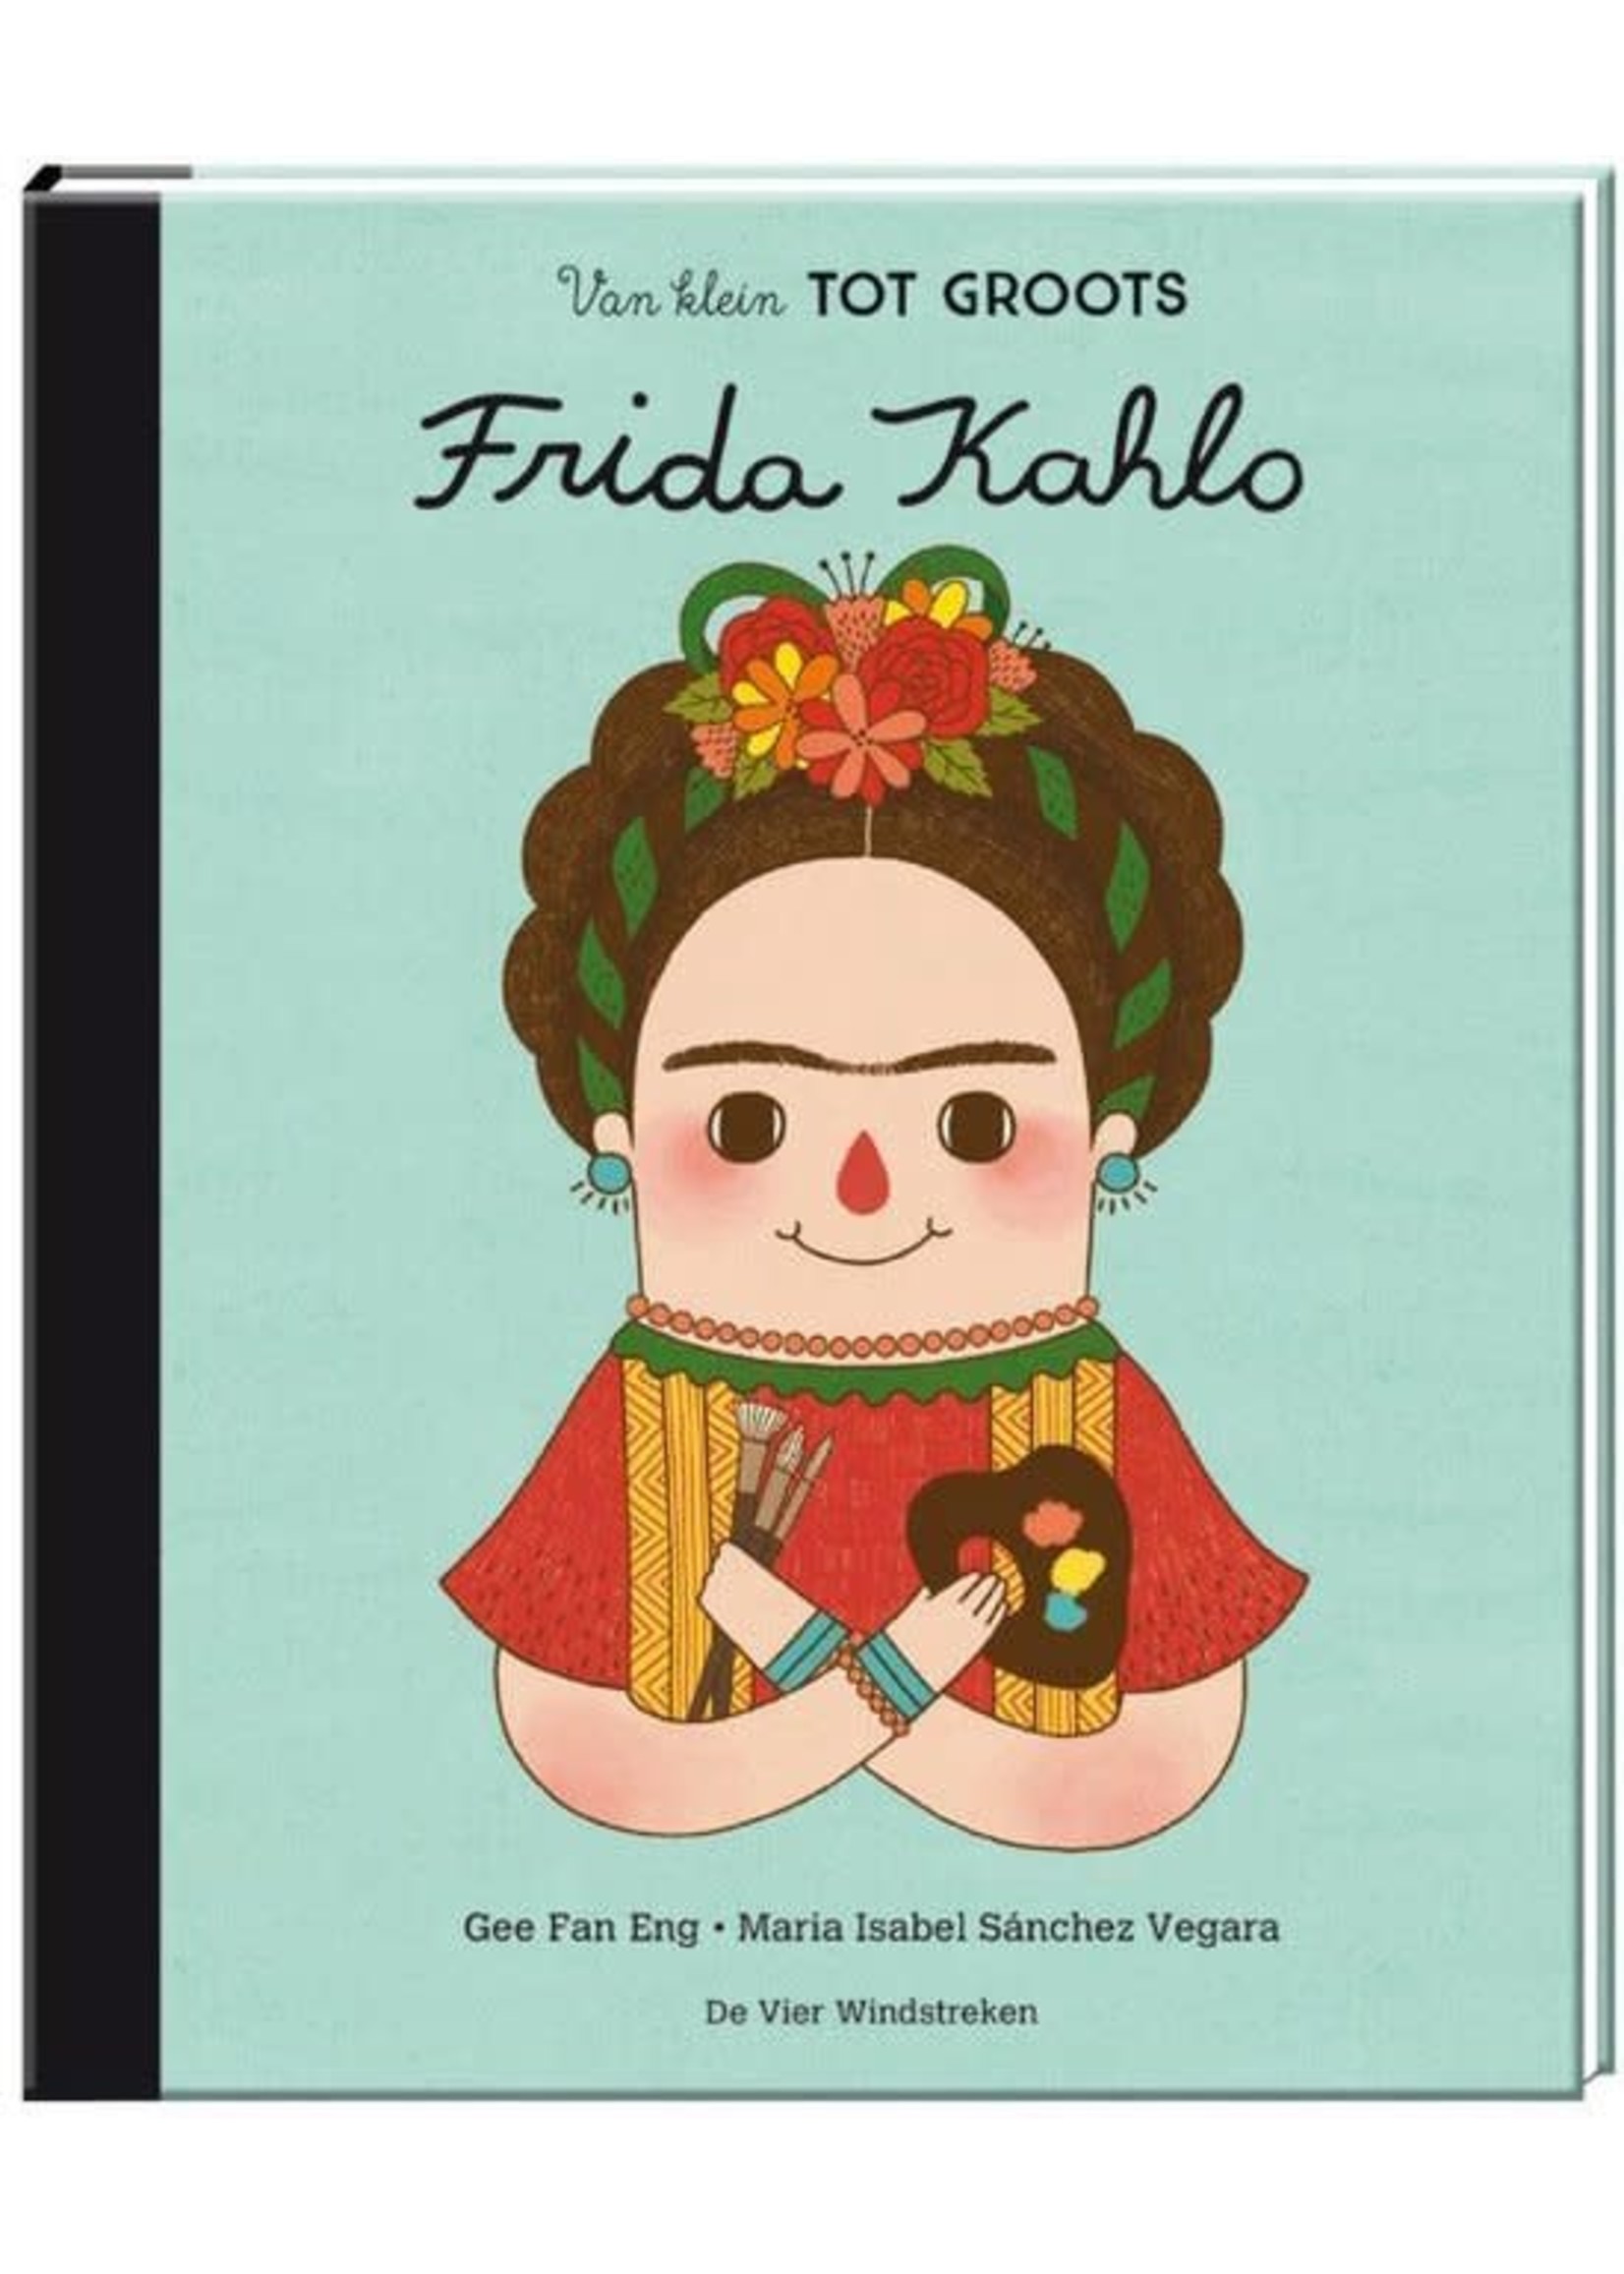 De Vier Windstreken Van klein tot groots: Frida Kahlo